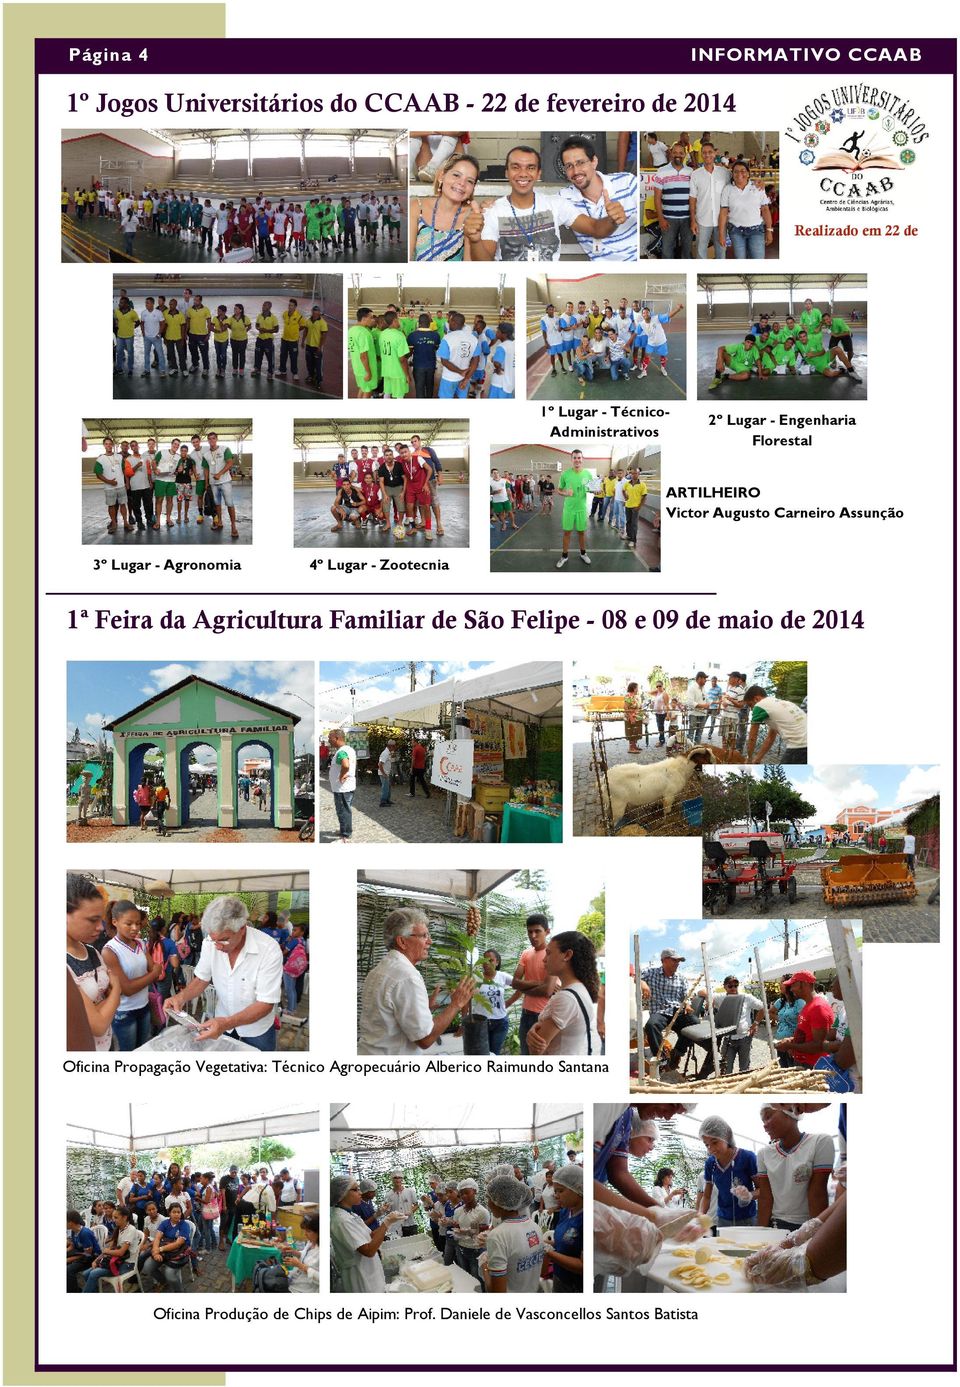 4º Lugar - Zootecnia 1ª Feira da Agricultura Familiar de São Felipe - 08 e 09 de maio de 2014 Oficina Propagação